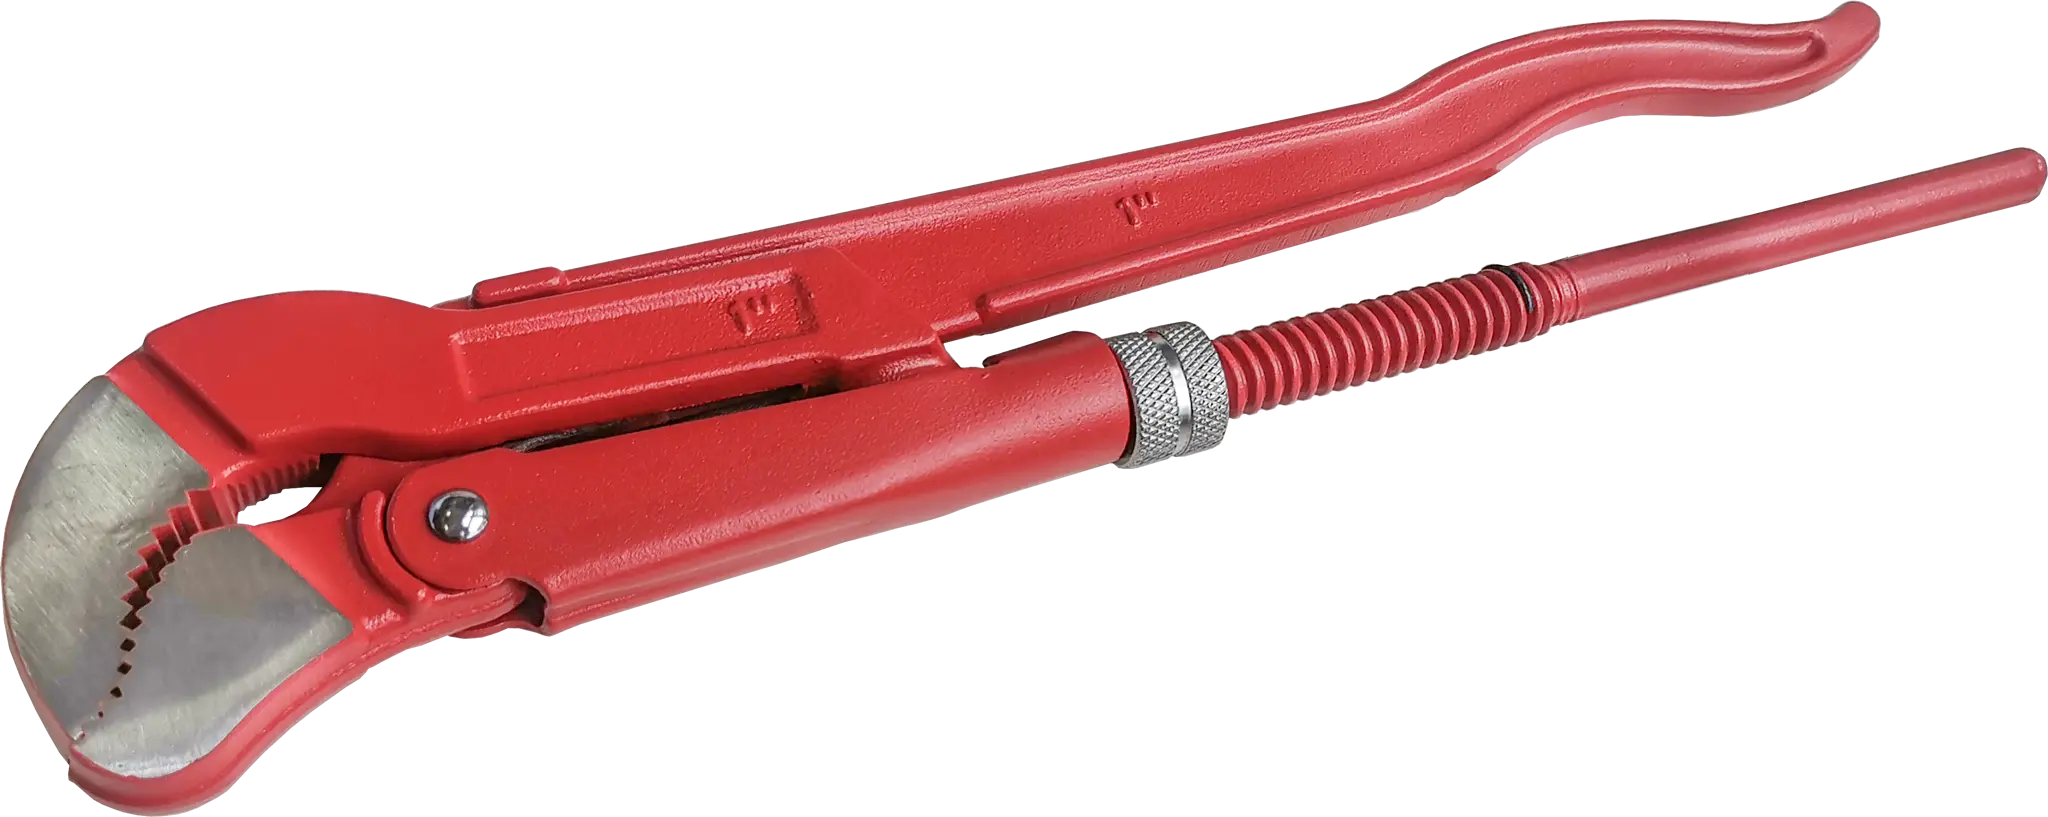 Ключ трубный газовый рычажный S 1045.0254 захват 25 мм, длина 320 мм трубный ключ sturm 1045 01 1